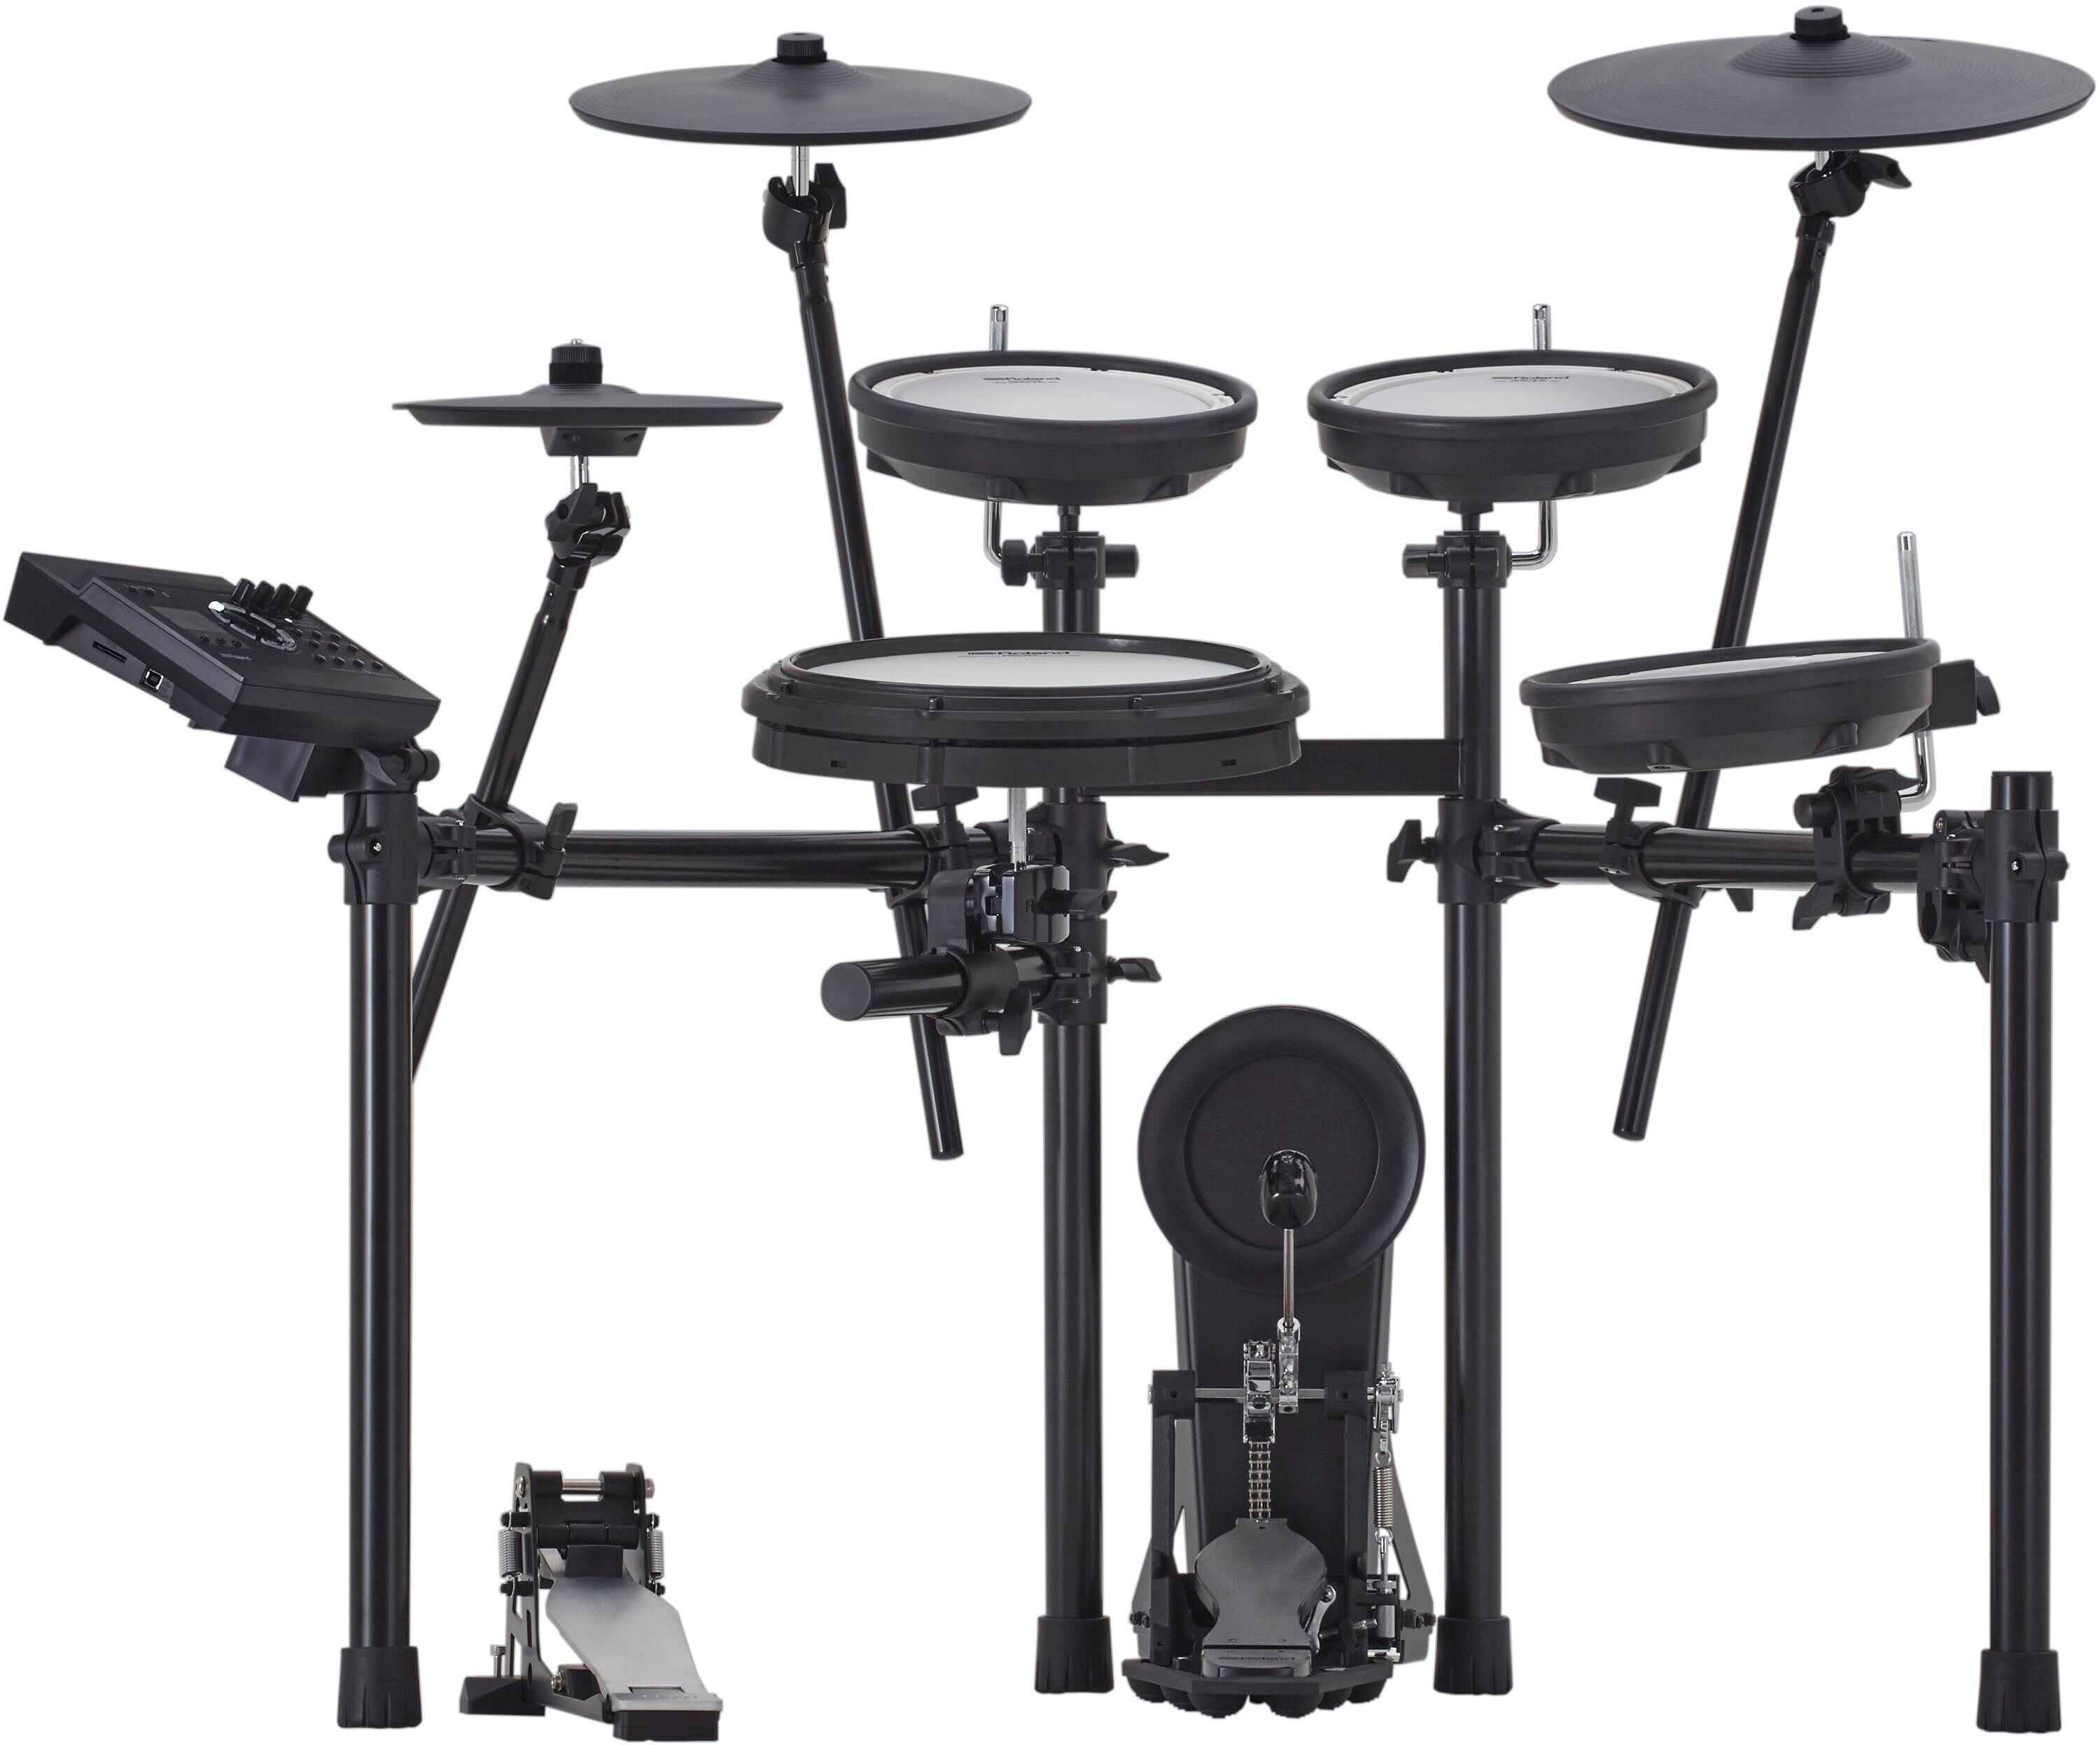 Roland V-Drums TD-17KV Generation 2 Electronic Drum Set